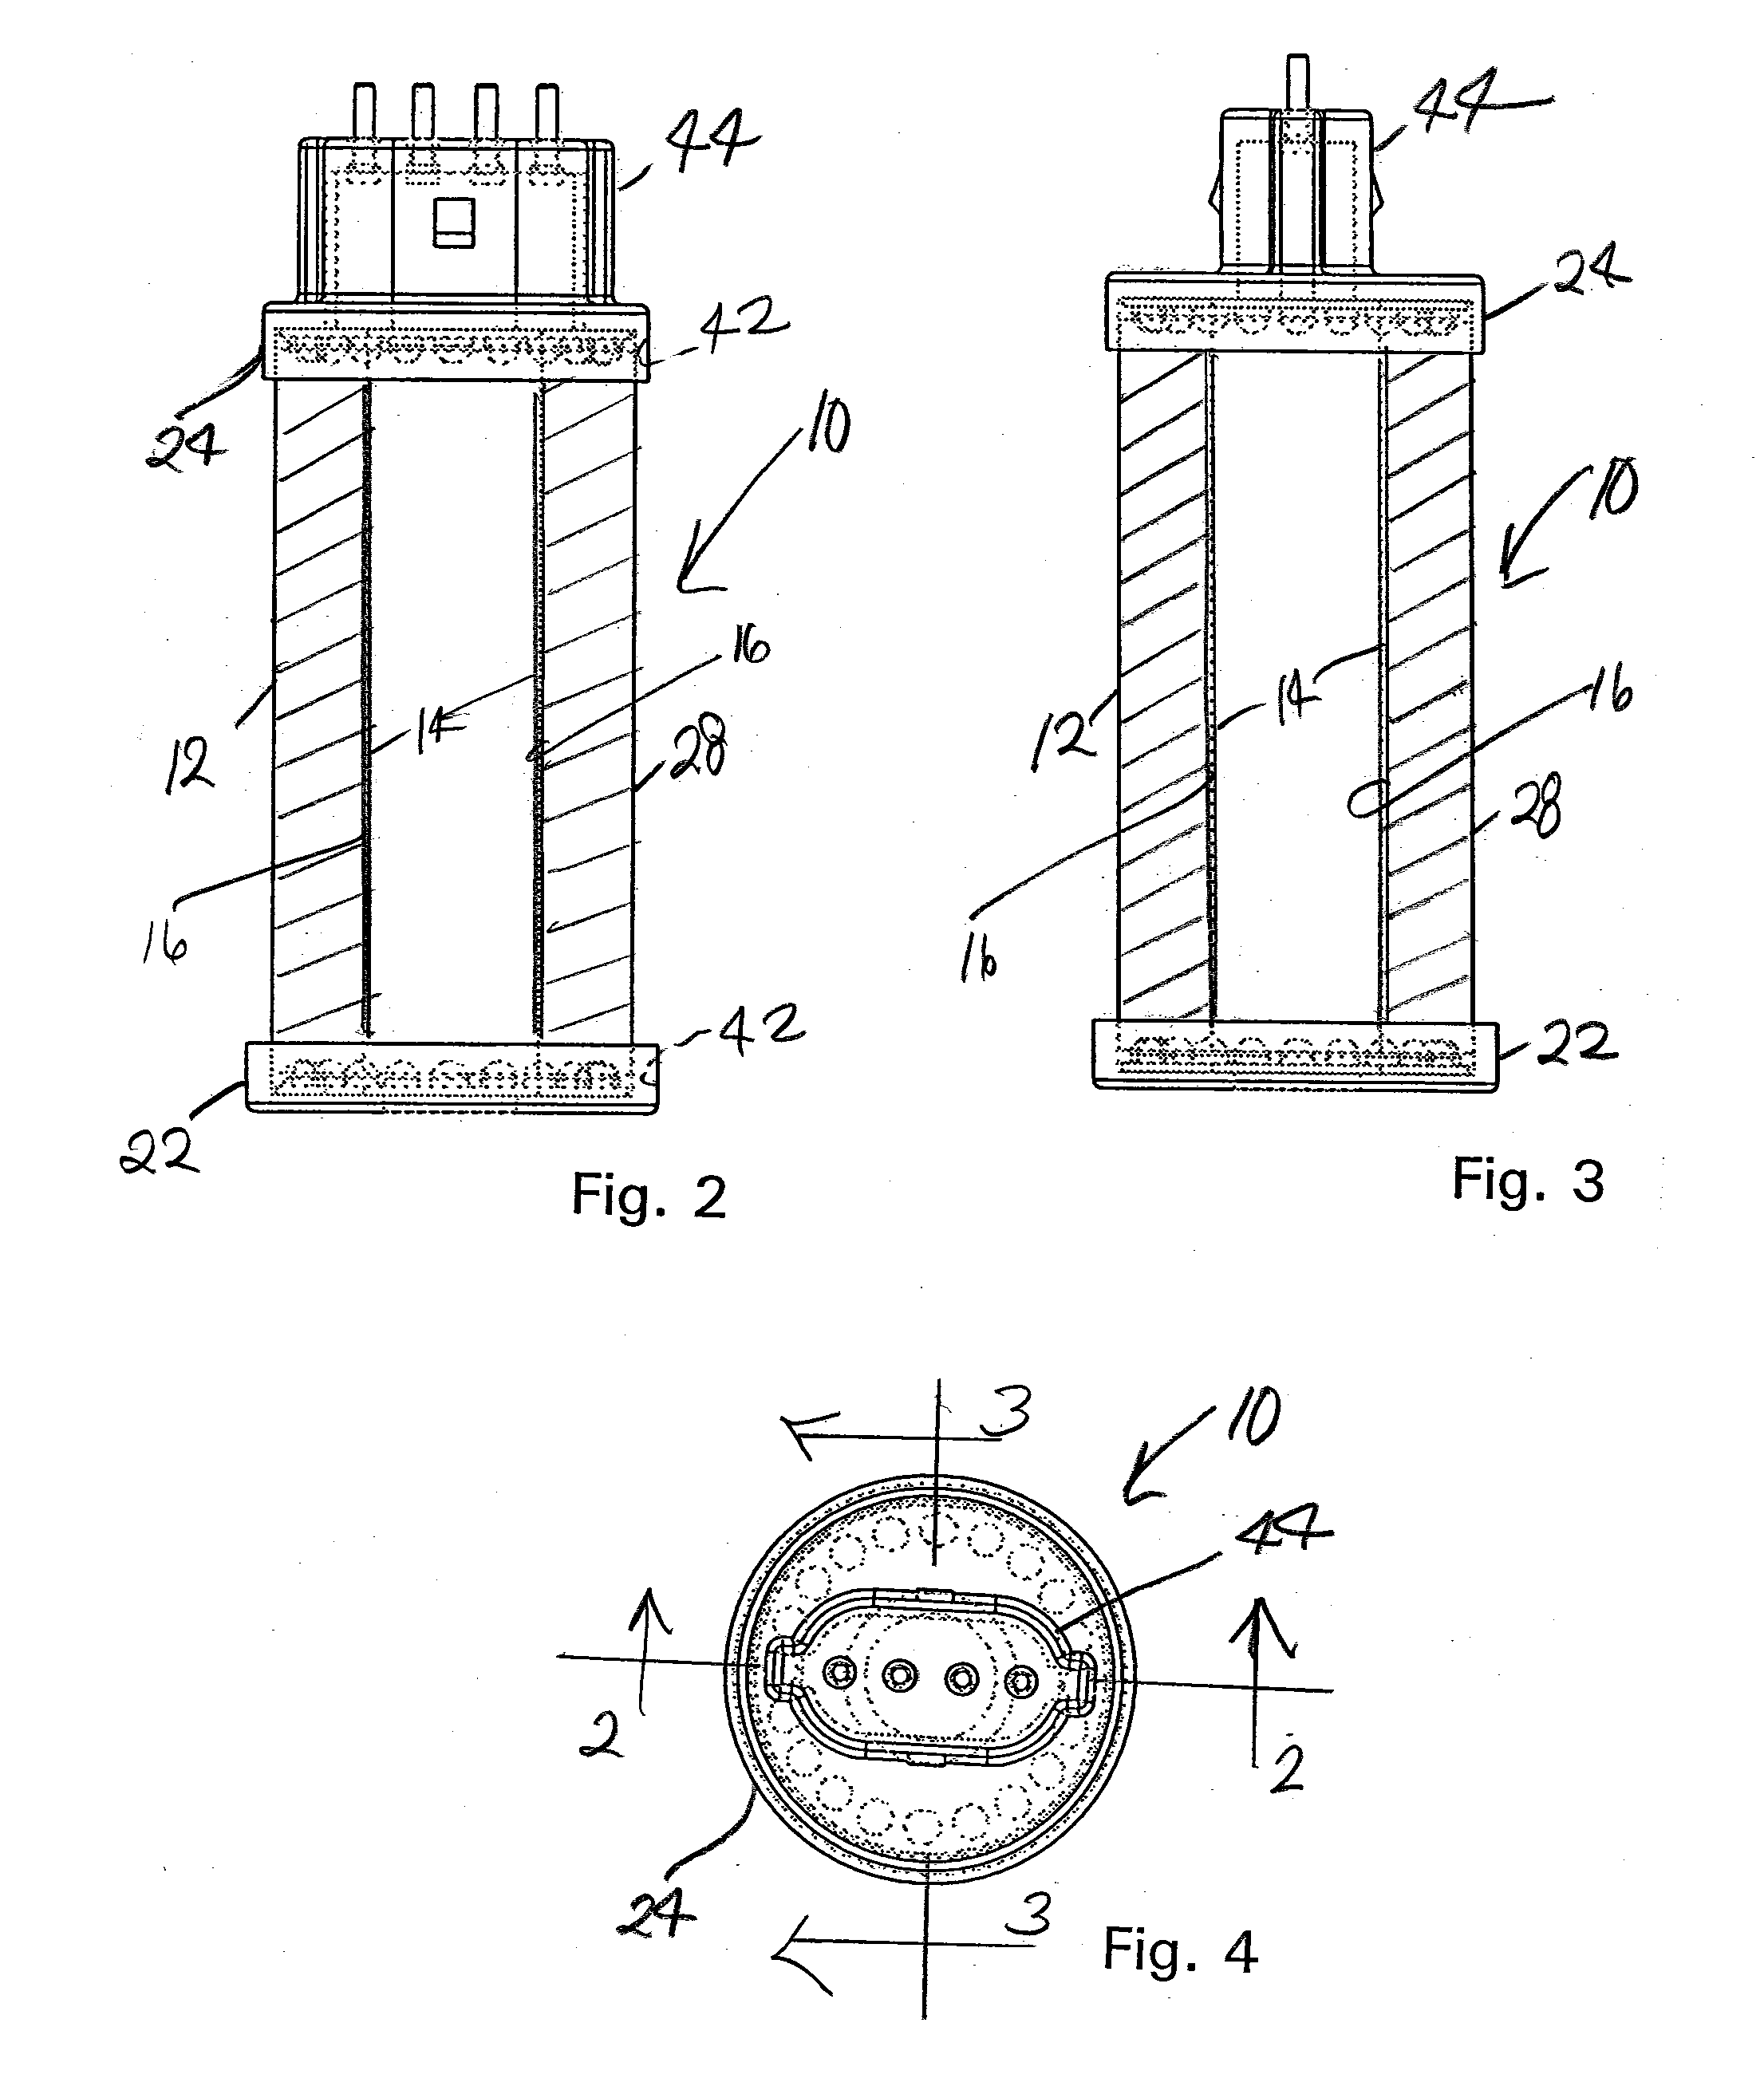 Lighting Apparatus